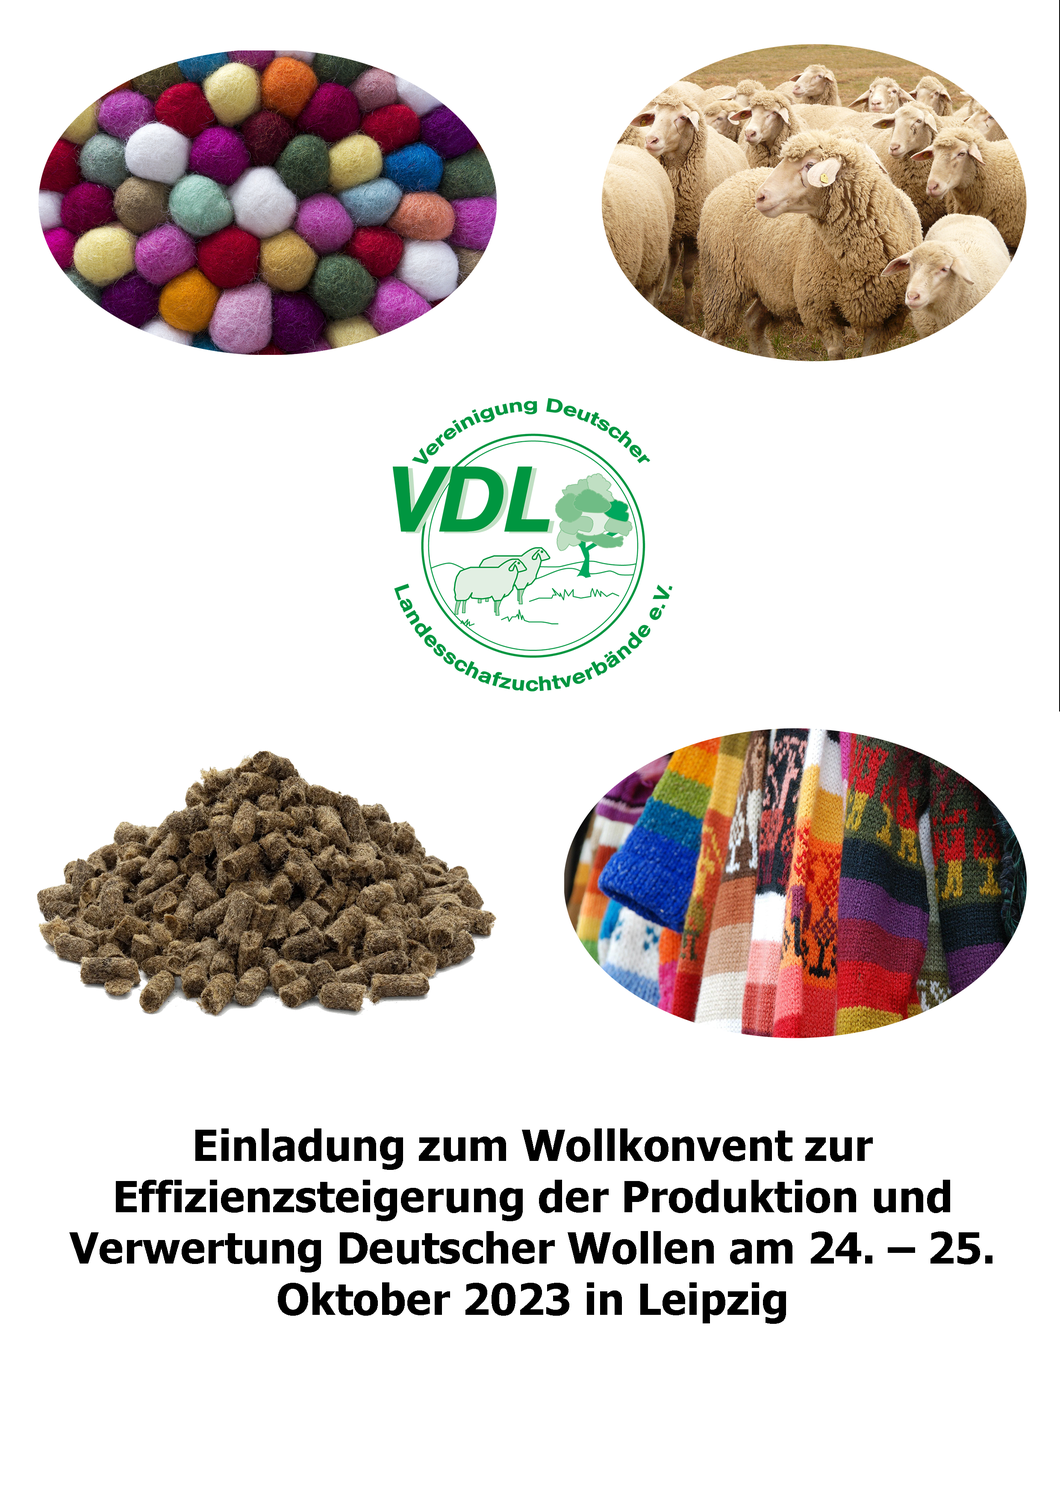 Wollkonvent zur Effizienzsteigerung der Produktion und Verwertung Deutscher Wollen am 24. – 25. Oktober 2023 in Leipzig